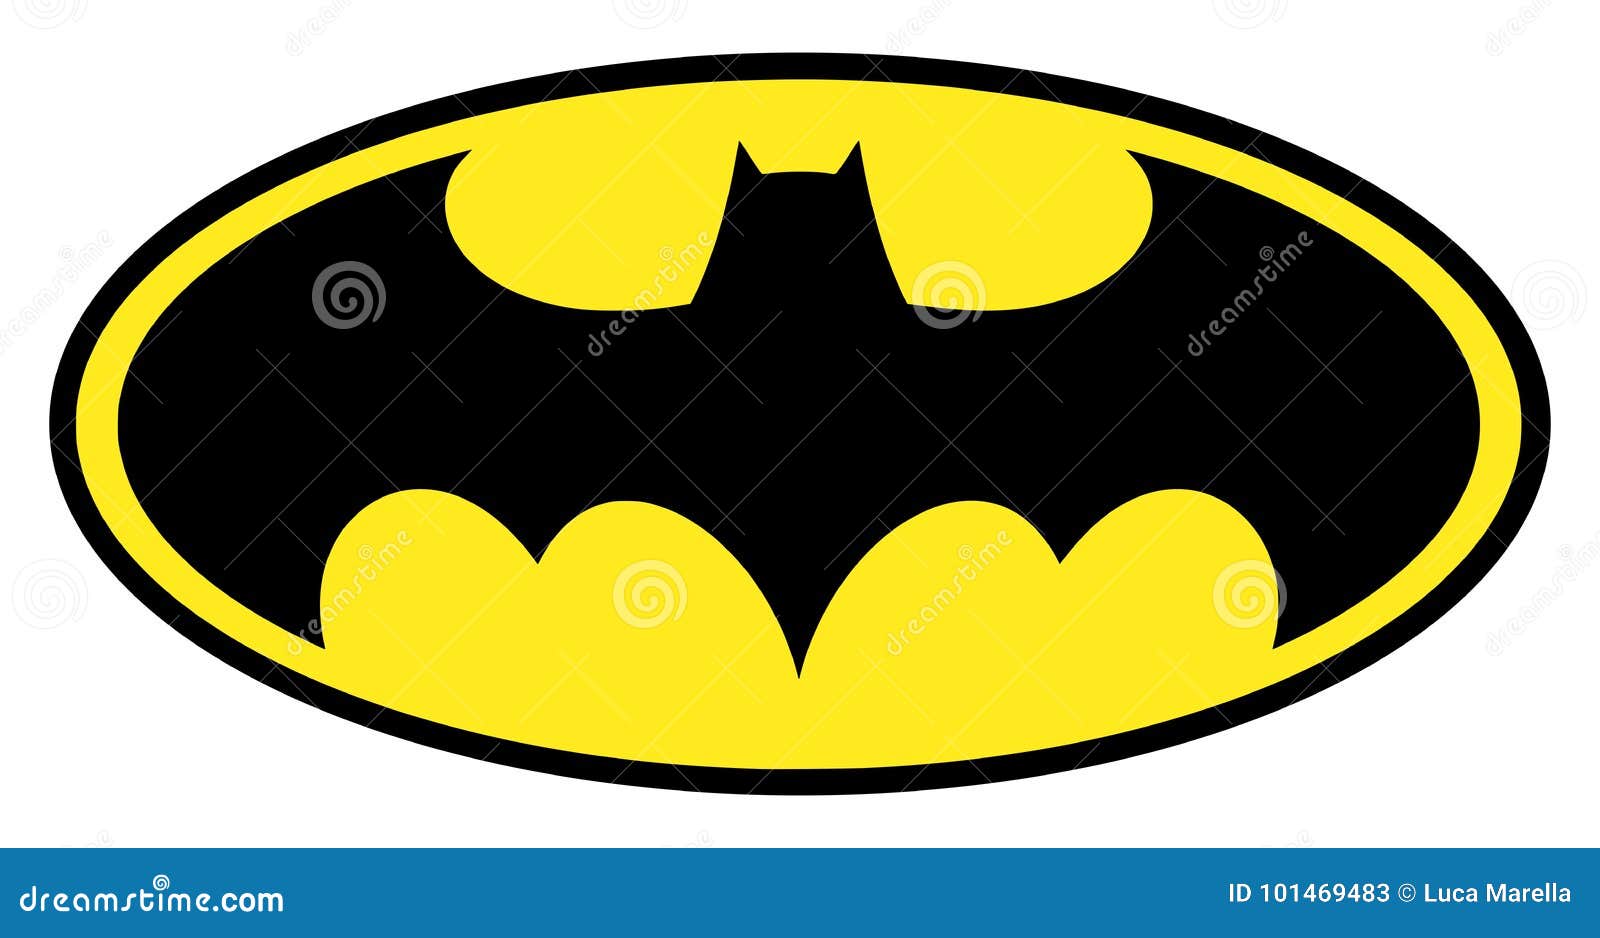 original batman symbol